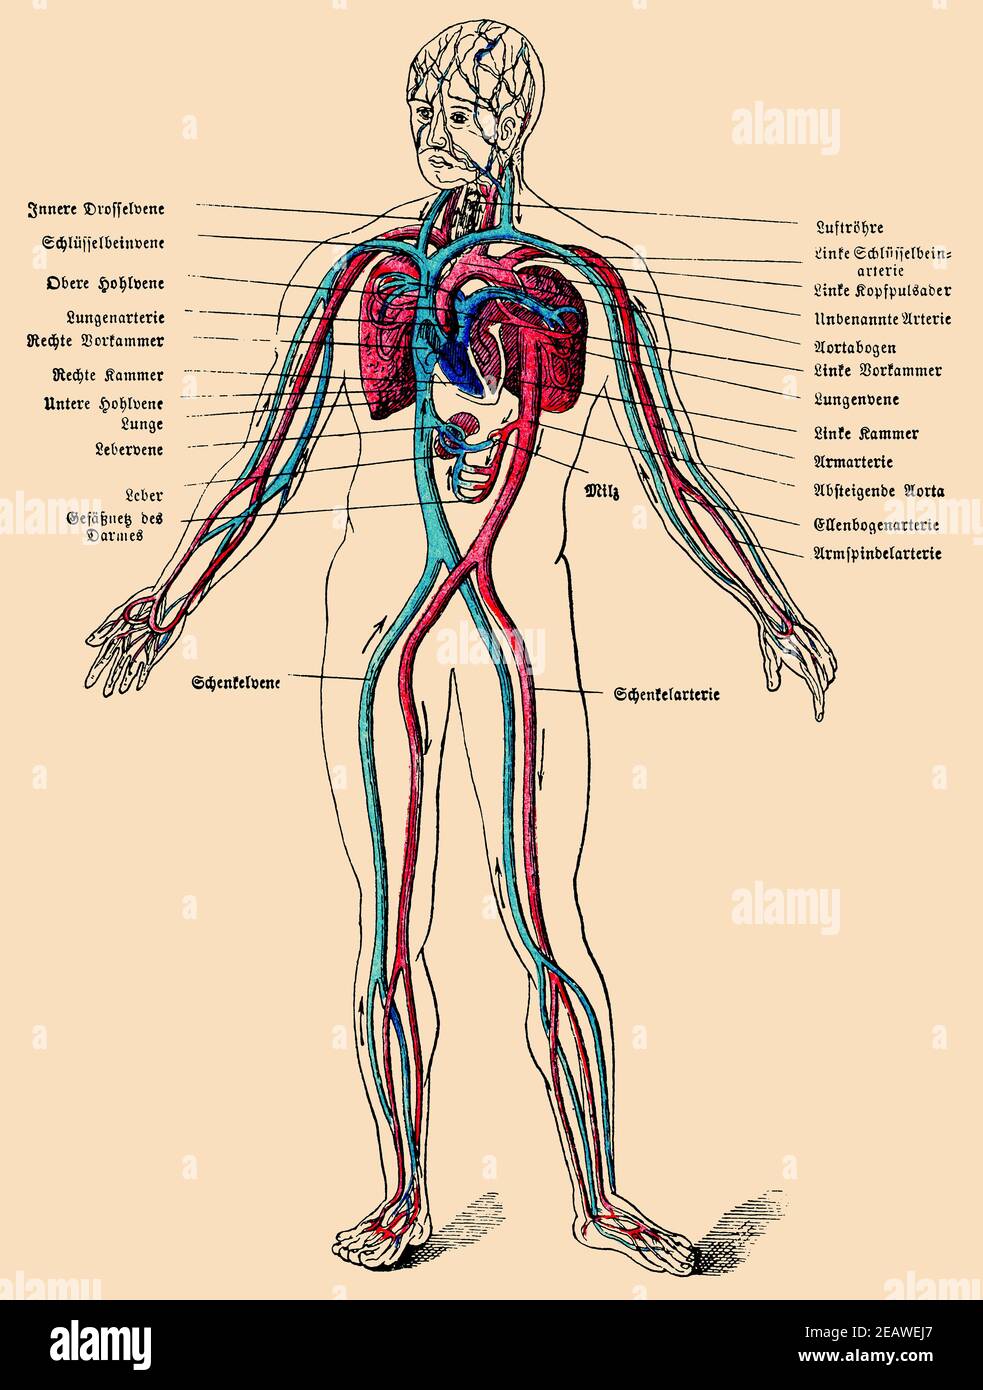 Le système circulatoire humain. Illustration du 19e siècle. Allemagne. Image couleur. Banque D'Images